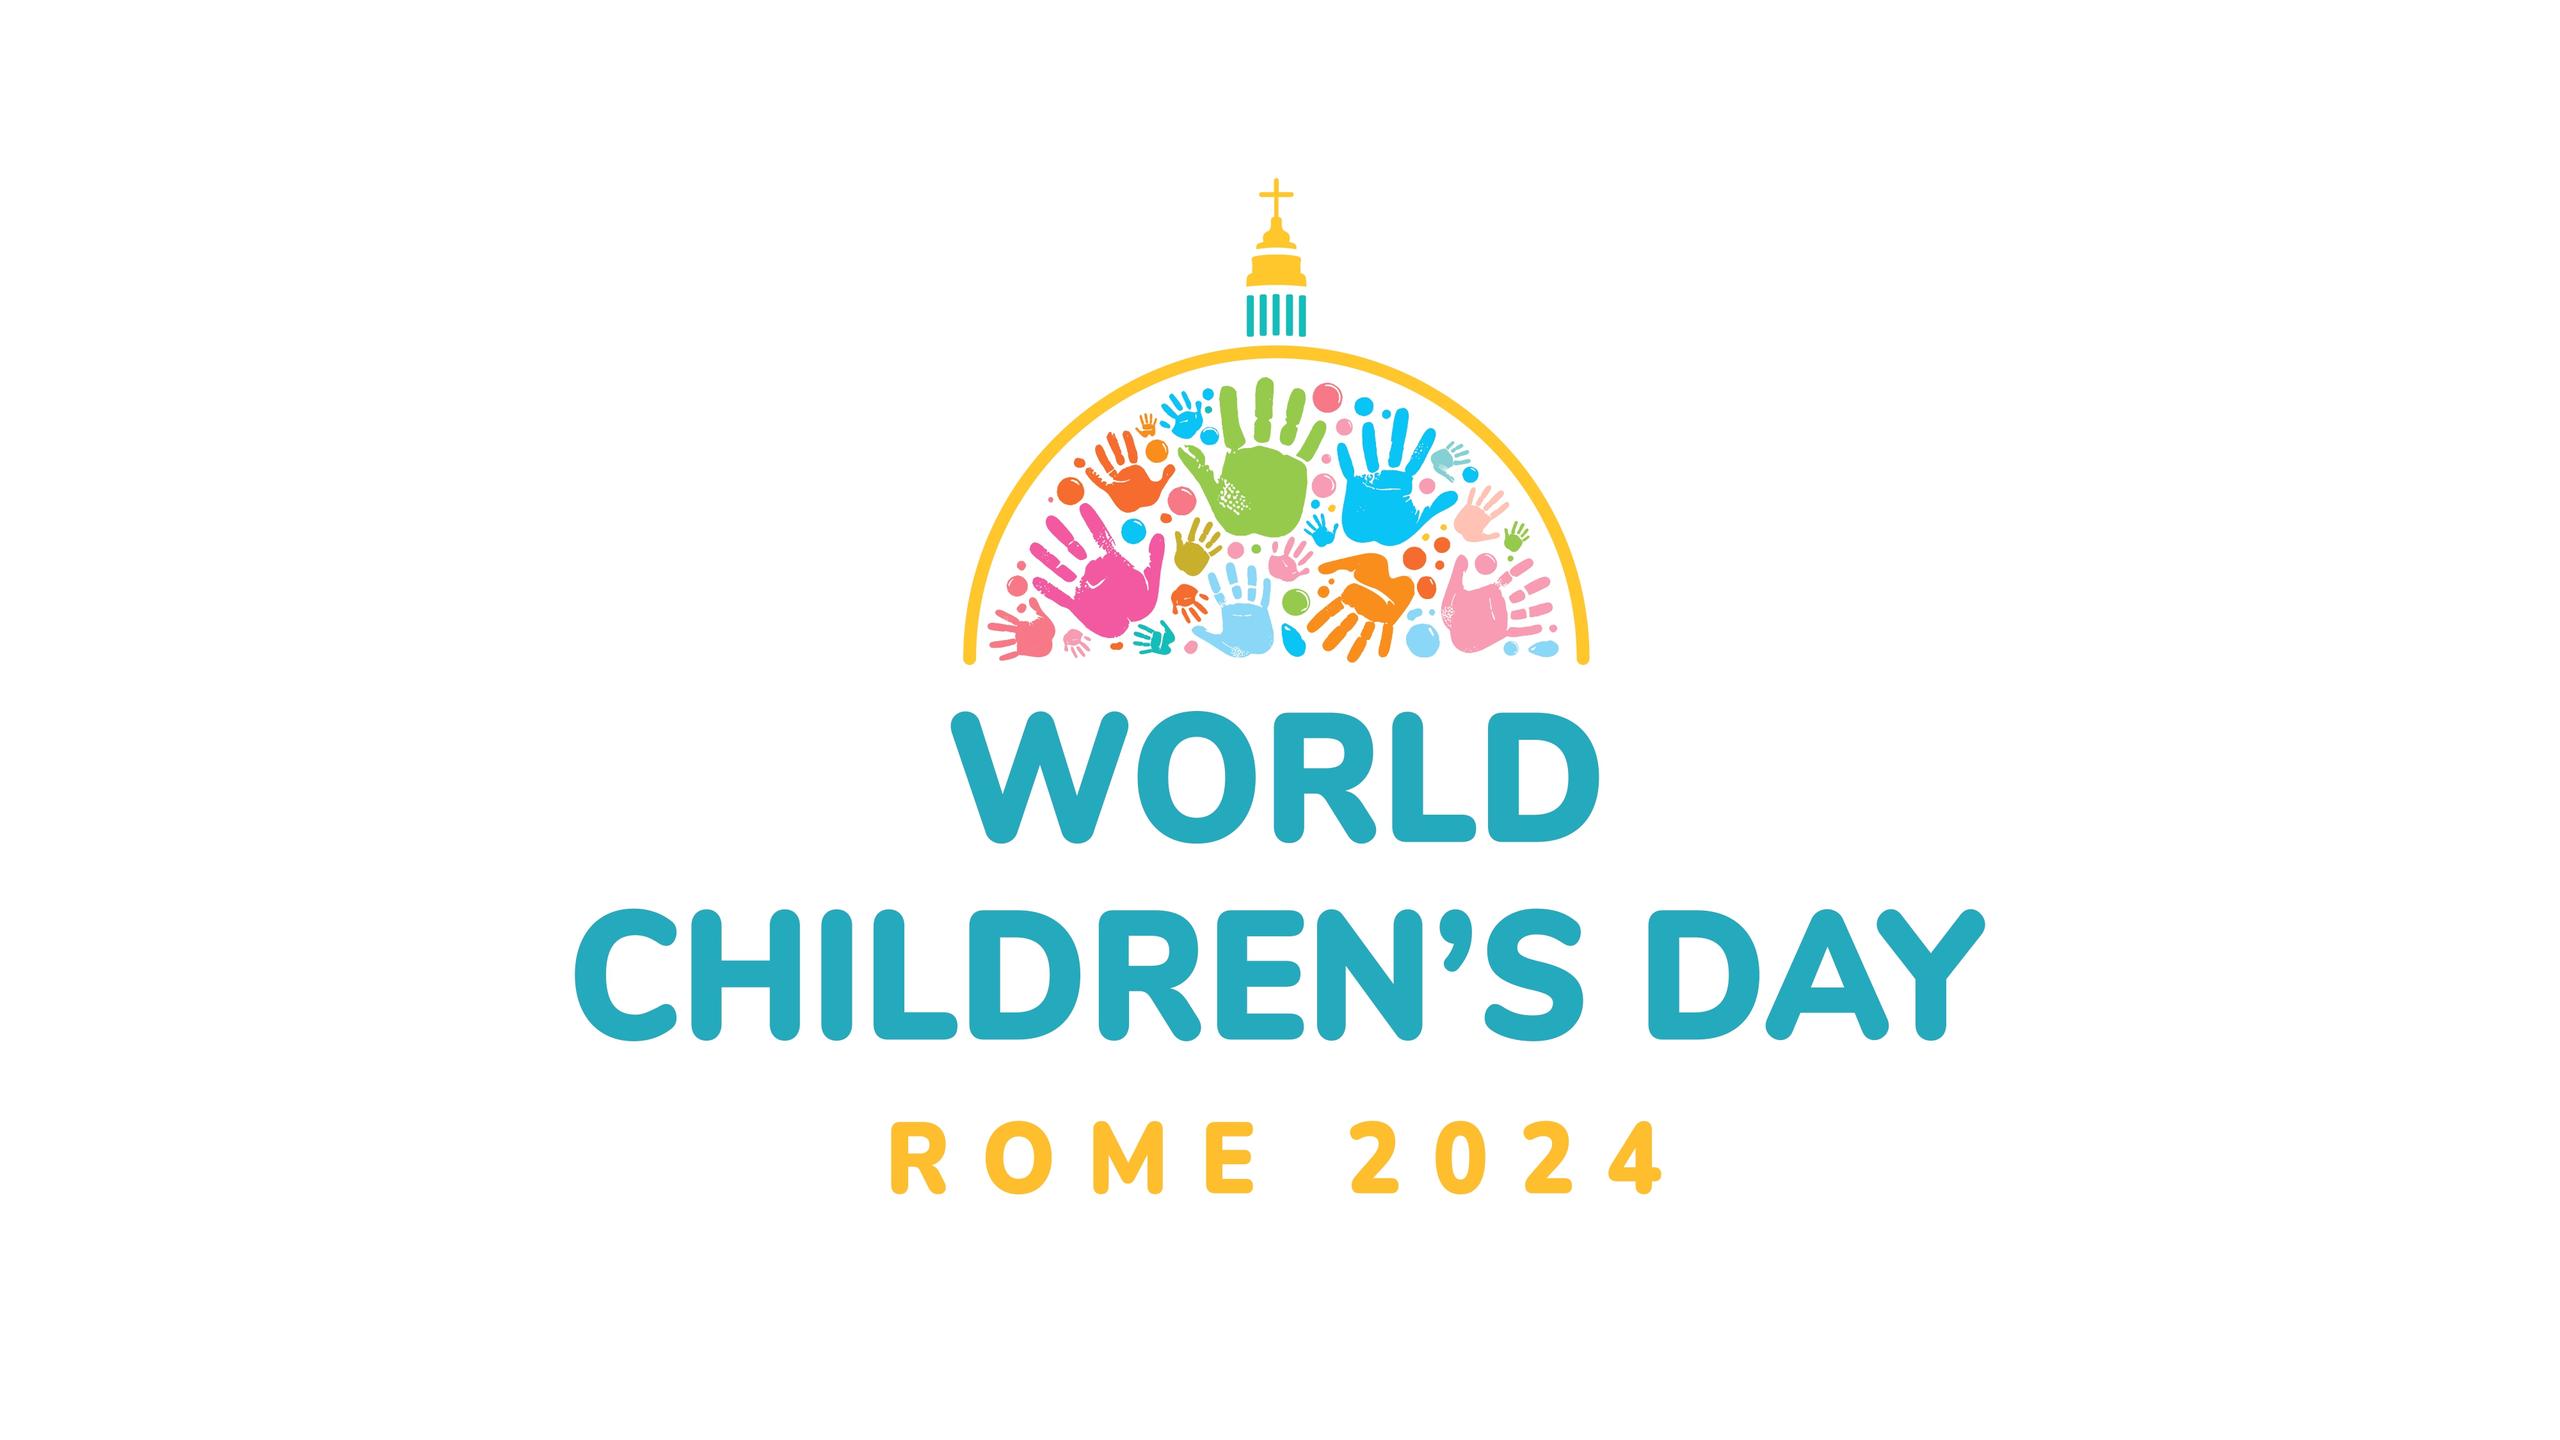 World children's day 2024